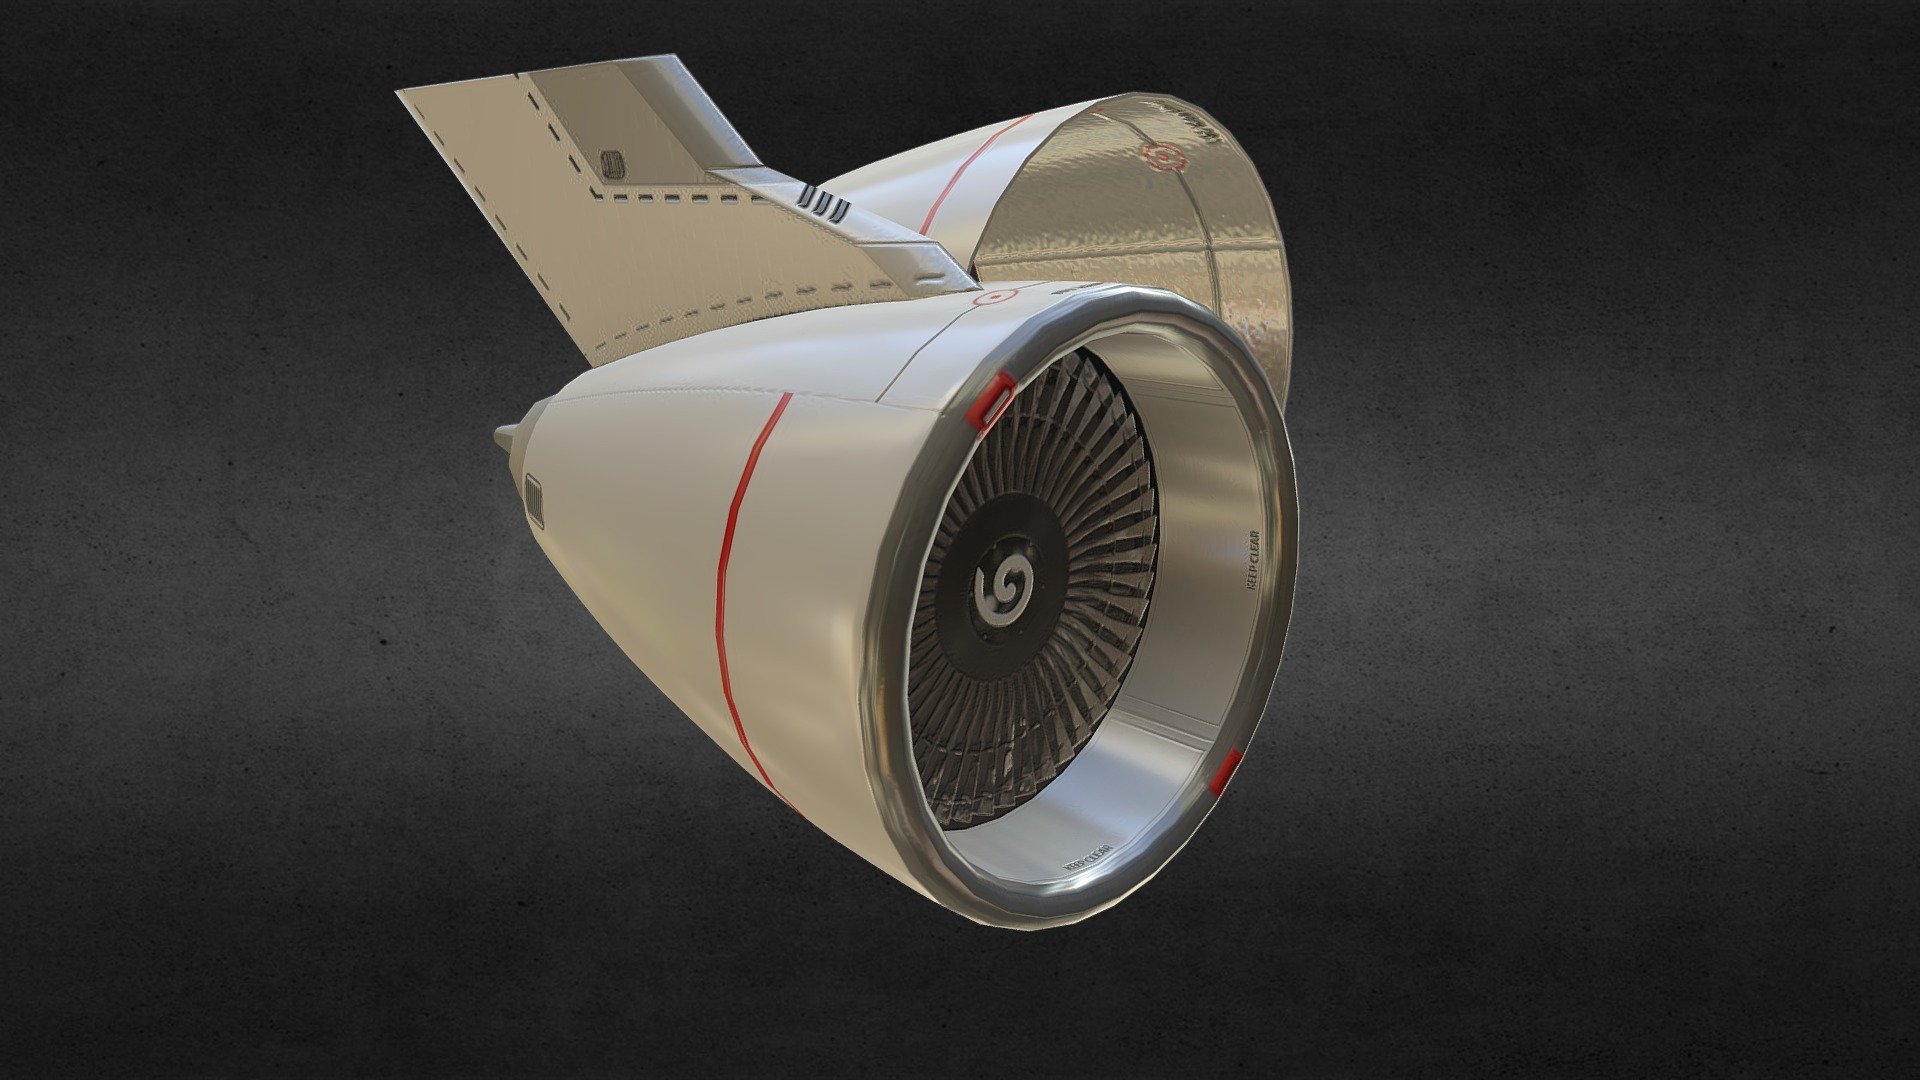 Jumbo Jet Engine - 3D model by Jiradet 3d model